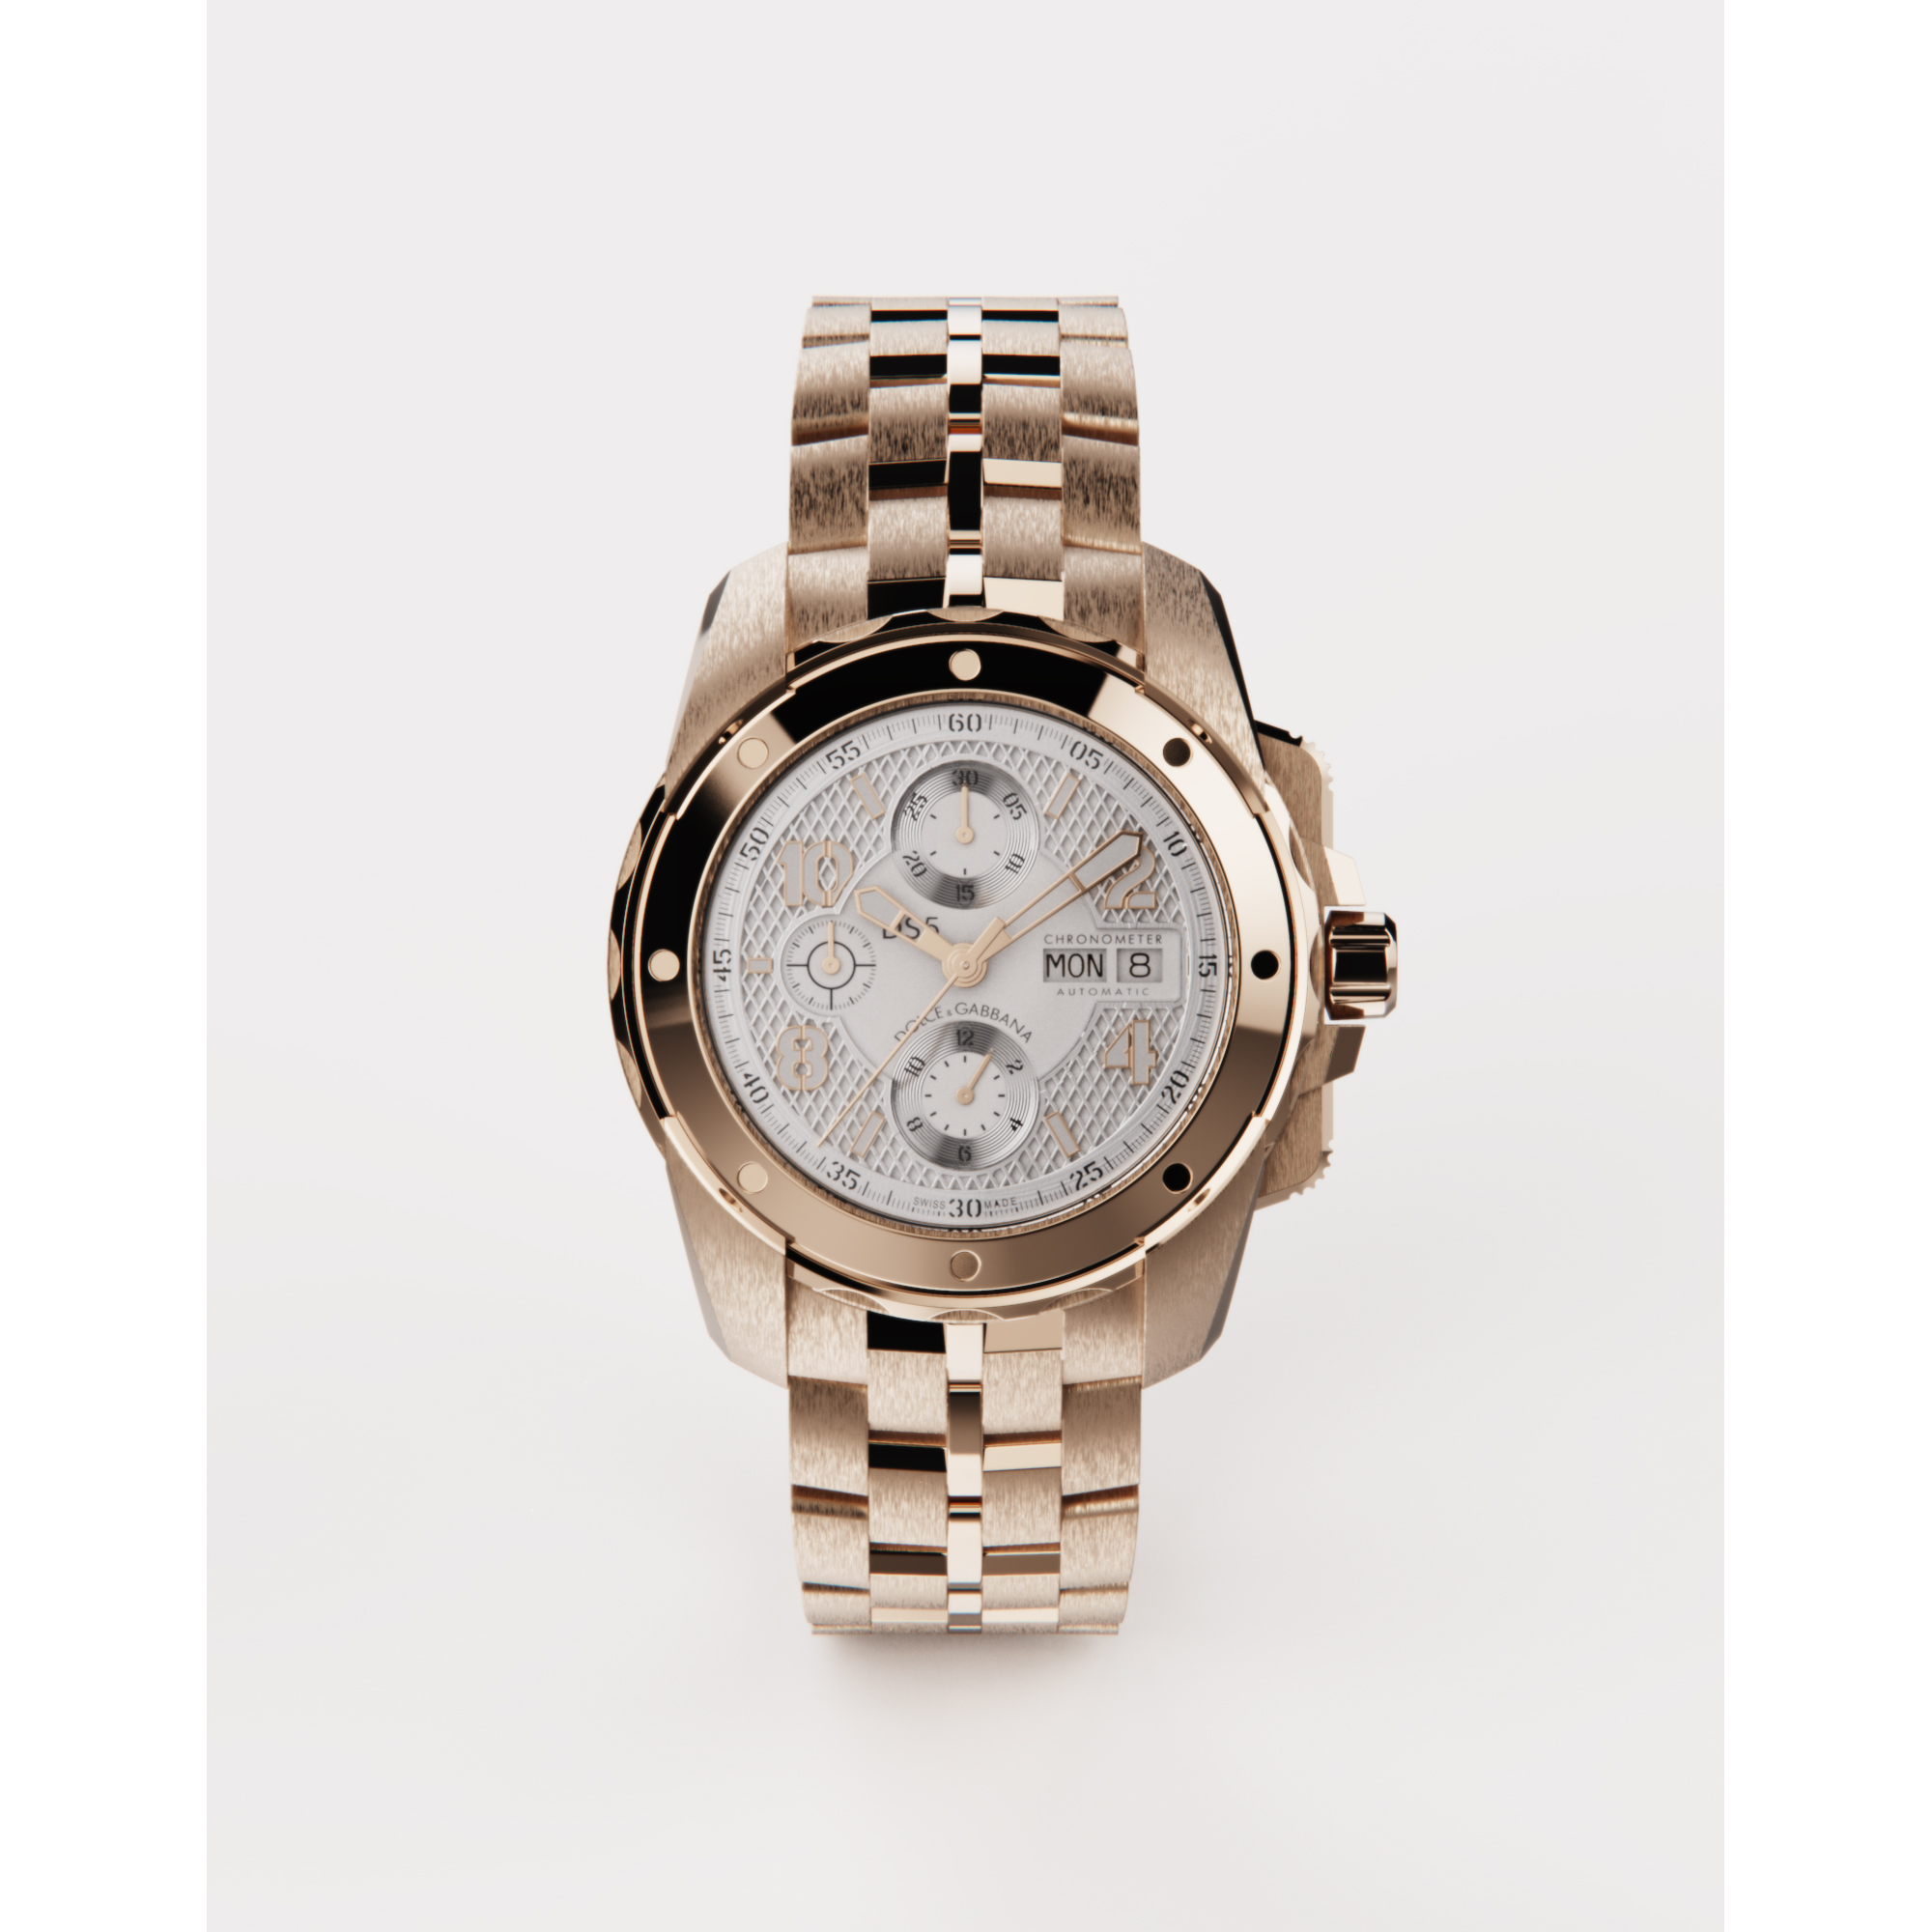 杜嘉班纳/Dolce&Gabbana DS5 红金腕表